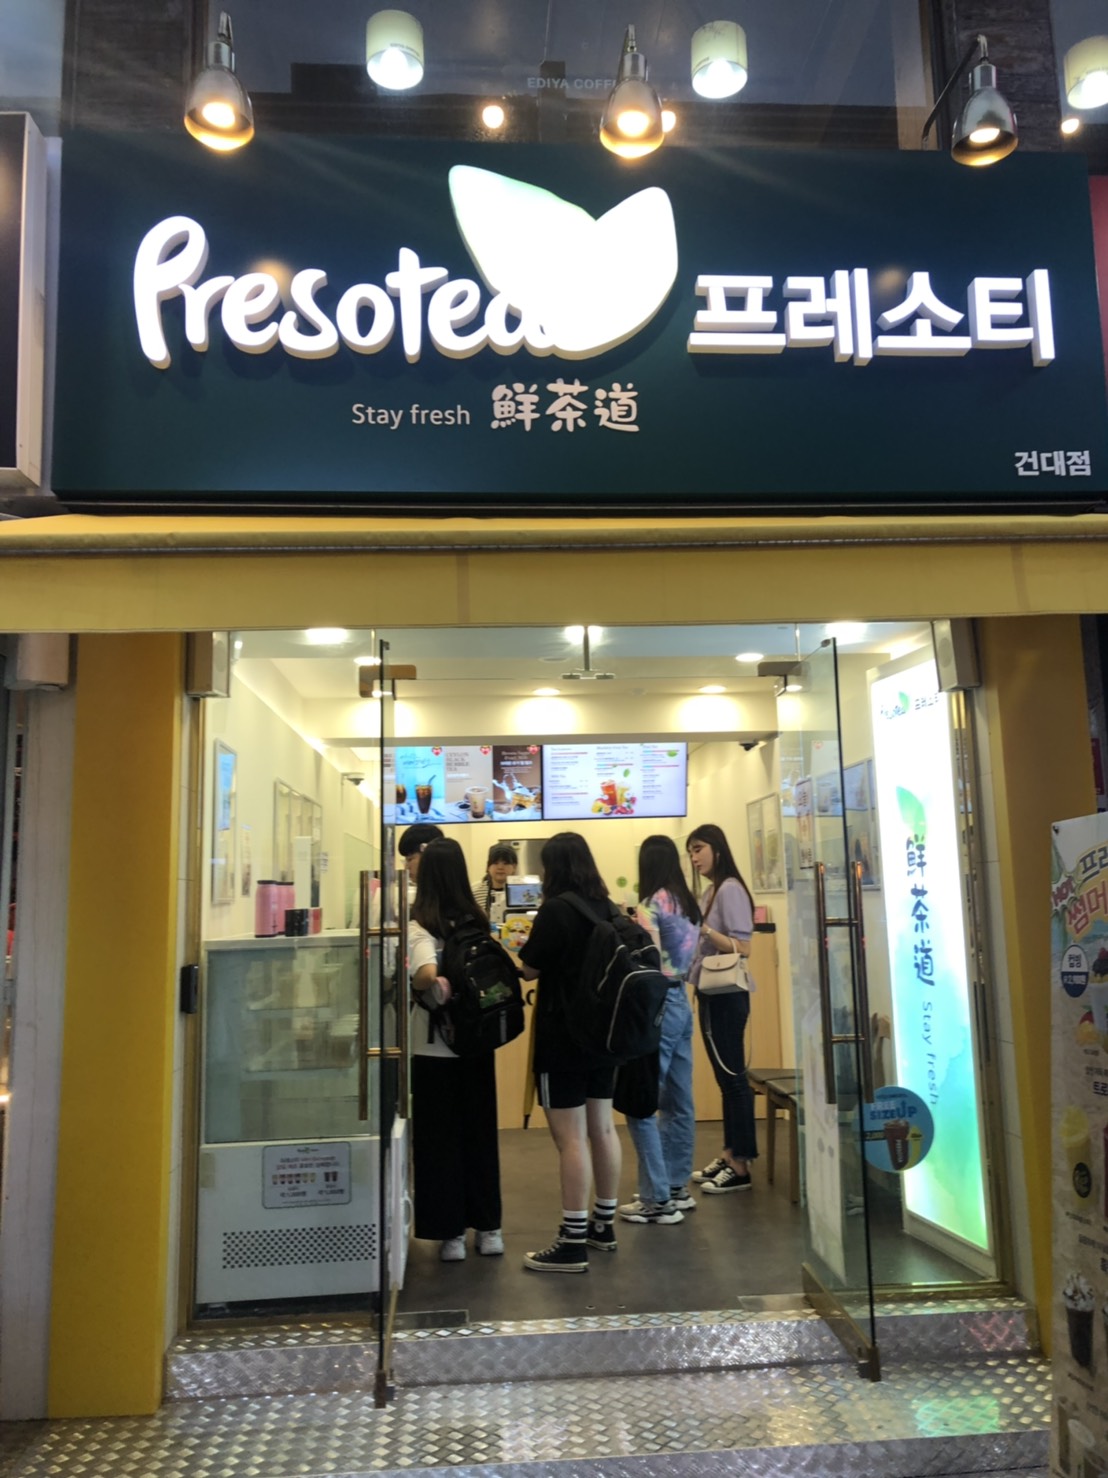 鲜茶道presotea韩国首尔二店开幕